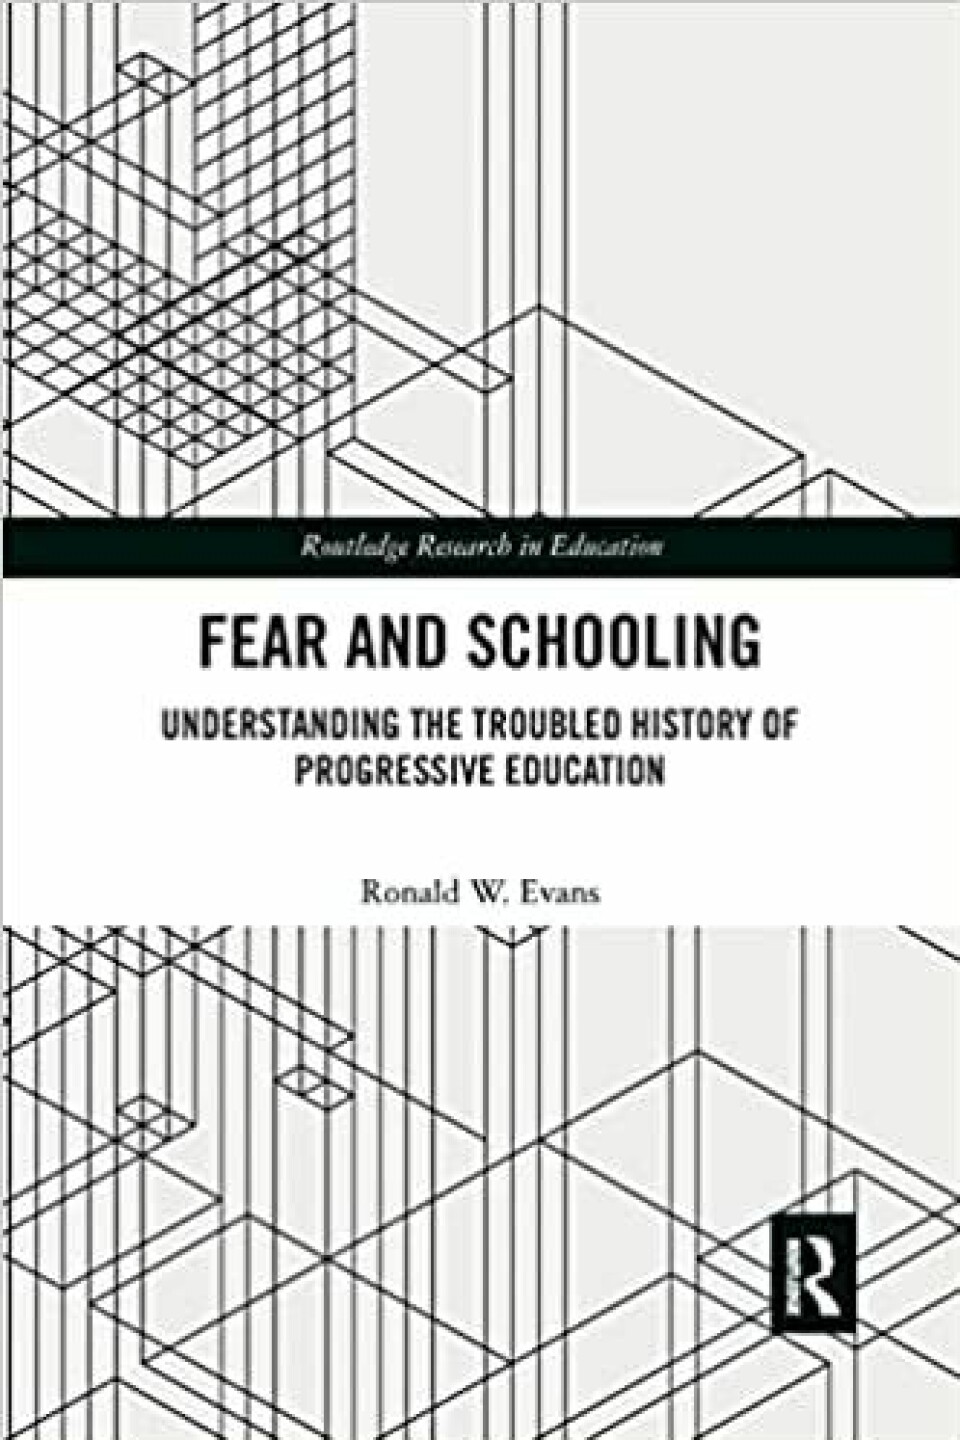 I sin anmeldelse av Fear and Schooling Understanding the Troubled History of Progressive Education (2020) av Ronald W. Evans introduserer Schaanning skillet mellom to forståelser av skolebarn.